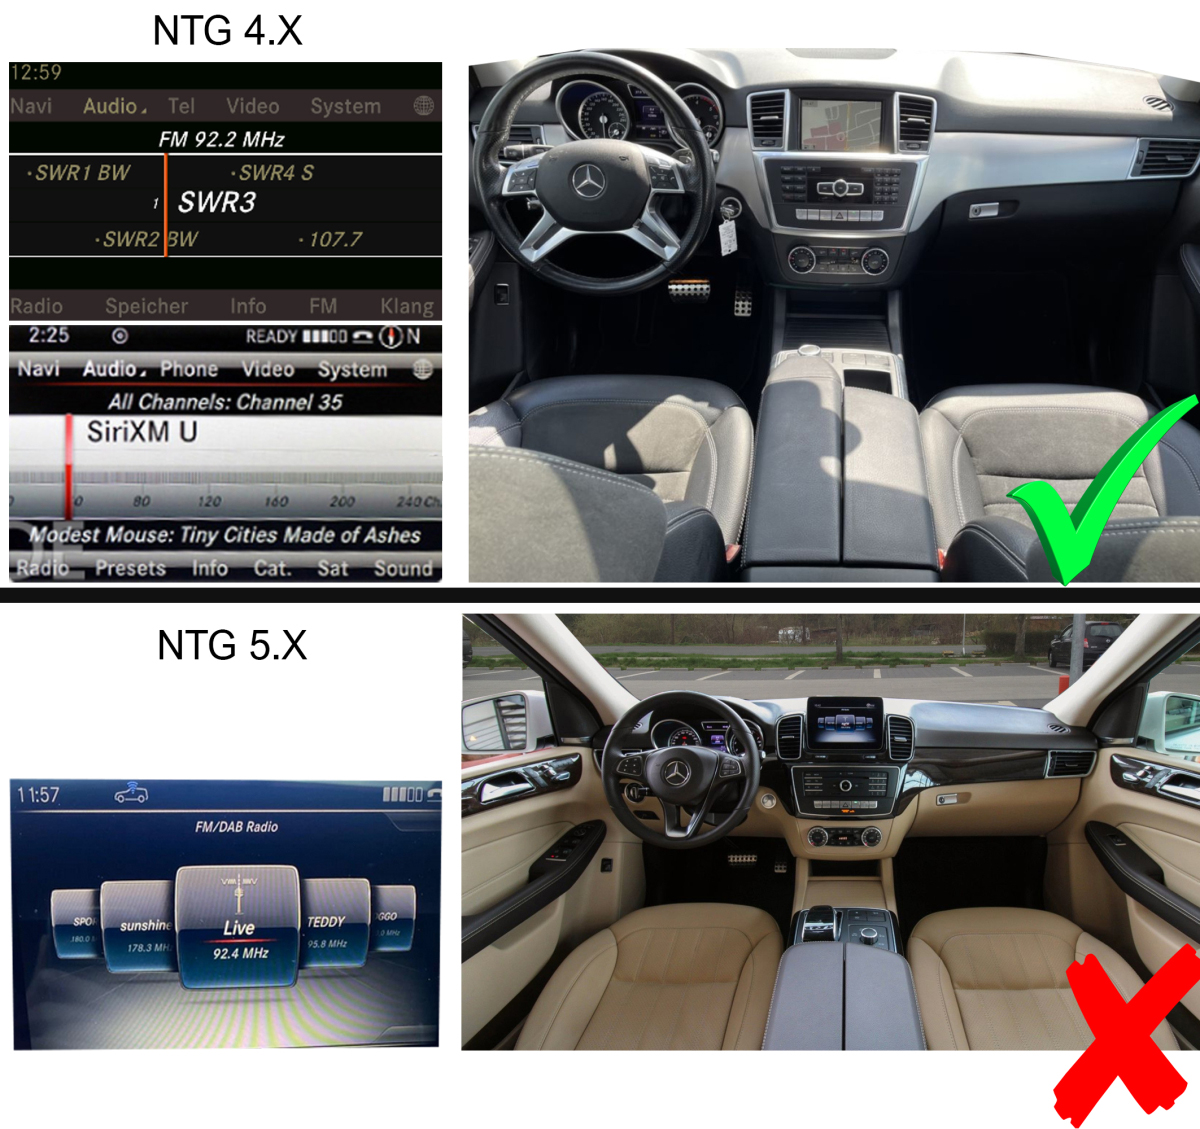 Mercedes-Benz ML W166 | GL X166 | 2012-2015 | NTG 4.5  custom fit multimedia radio suitability for the car